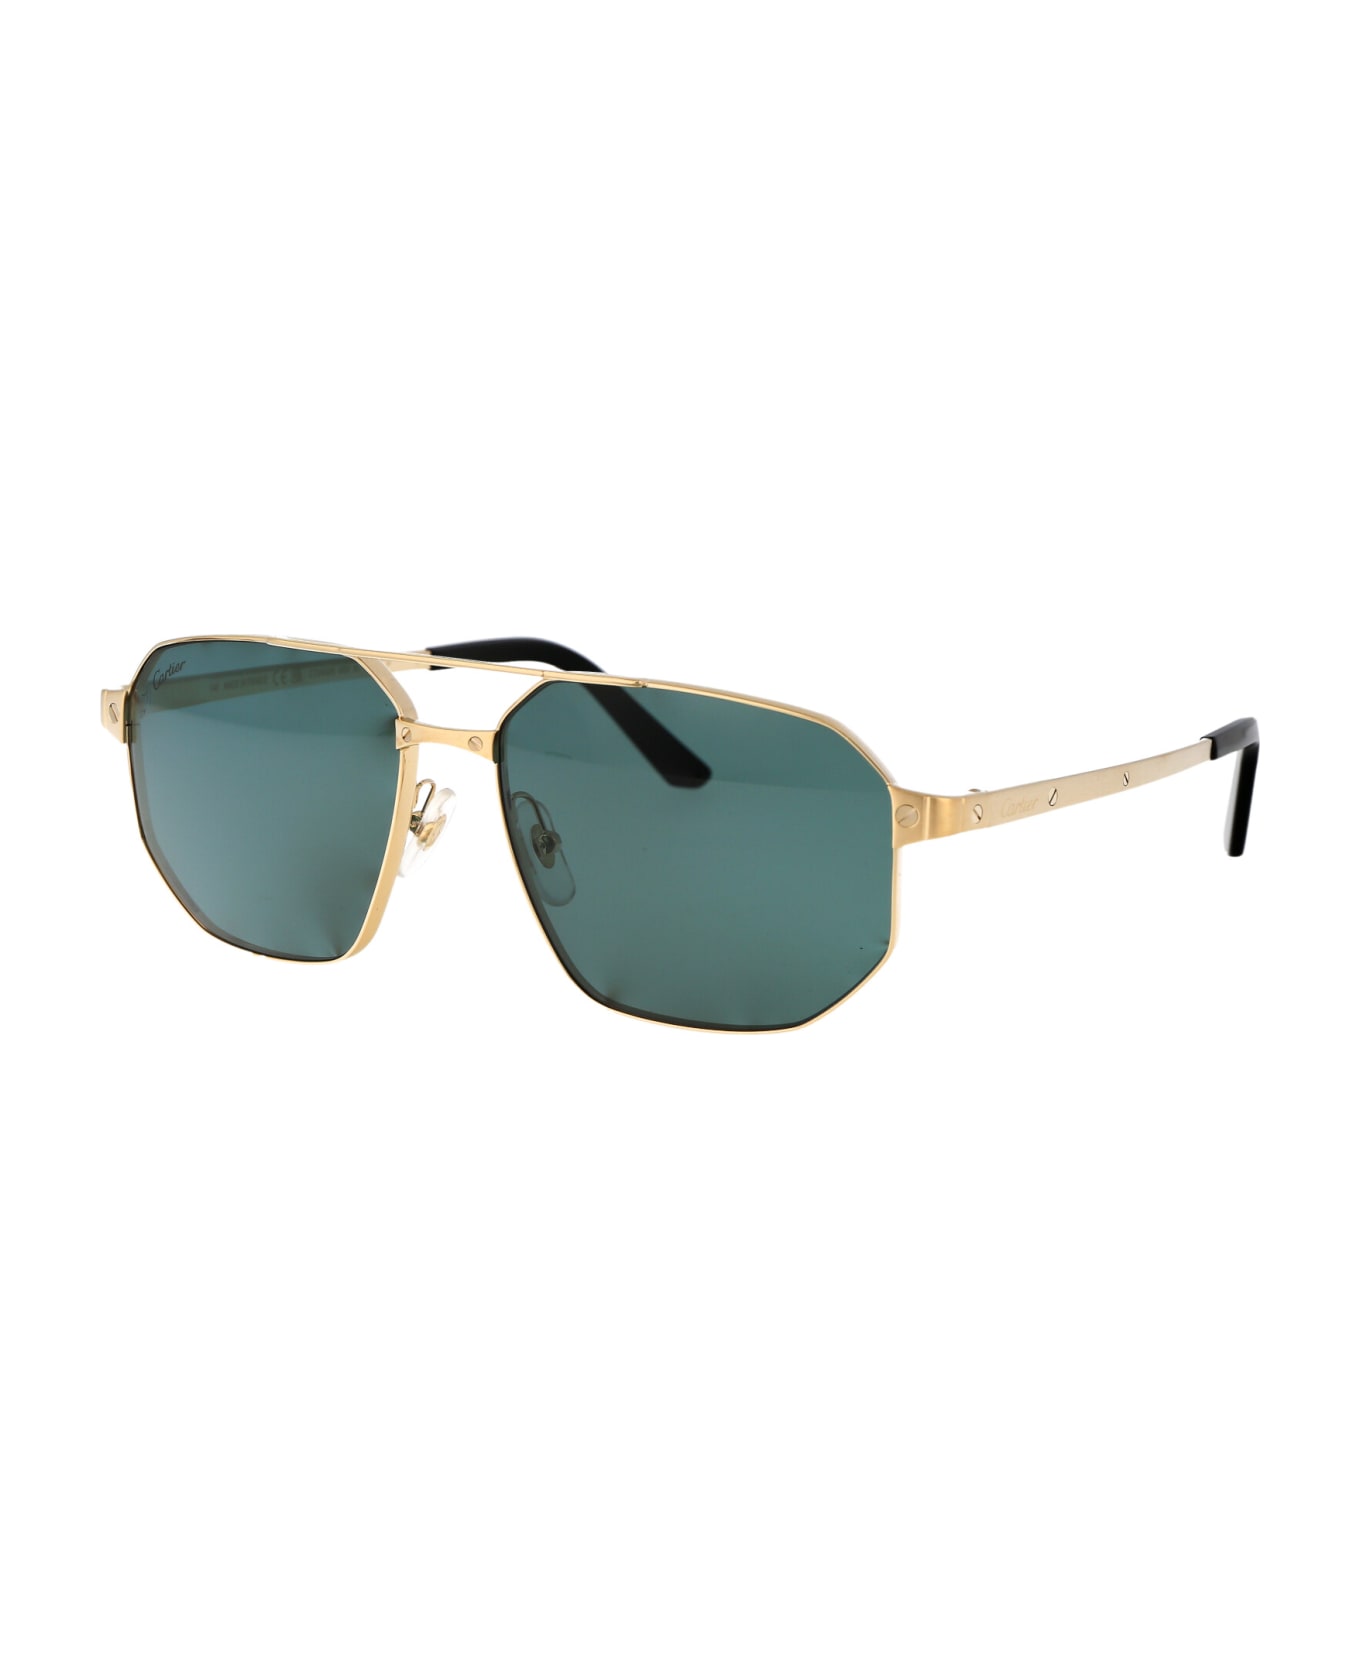 Cartier Eyewear Ct0462s Sunglasses - 003 GOLD GOLD GREEN